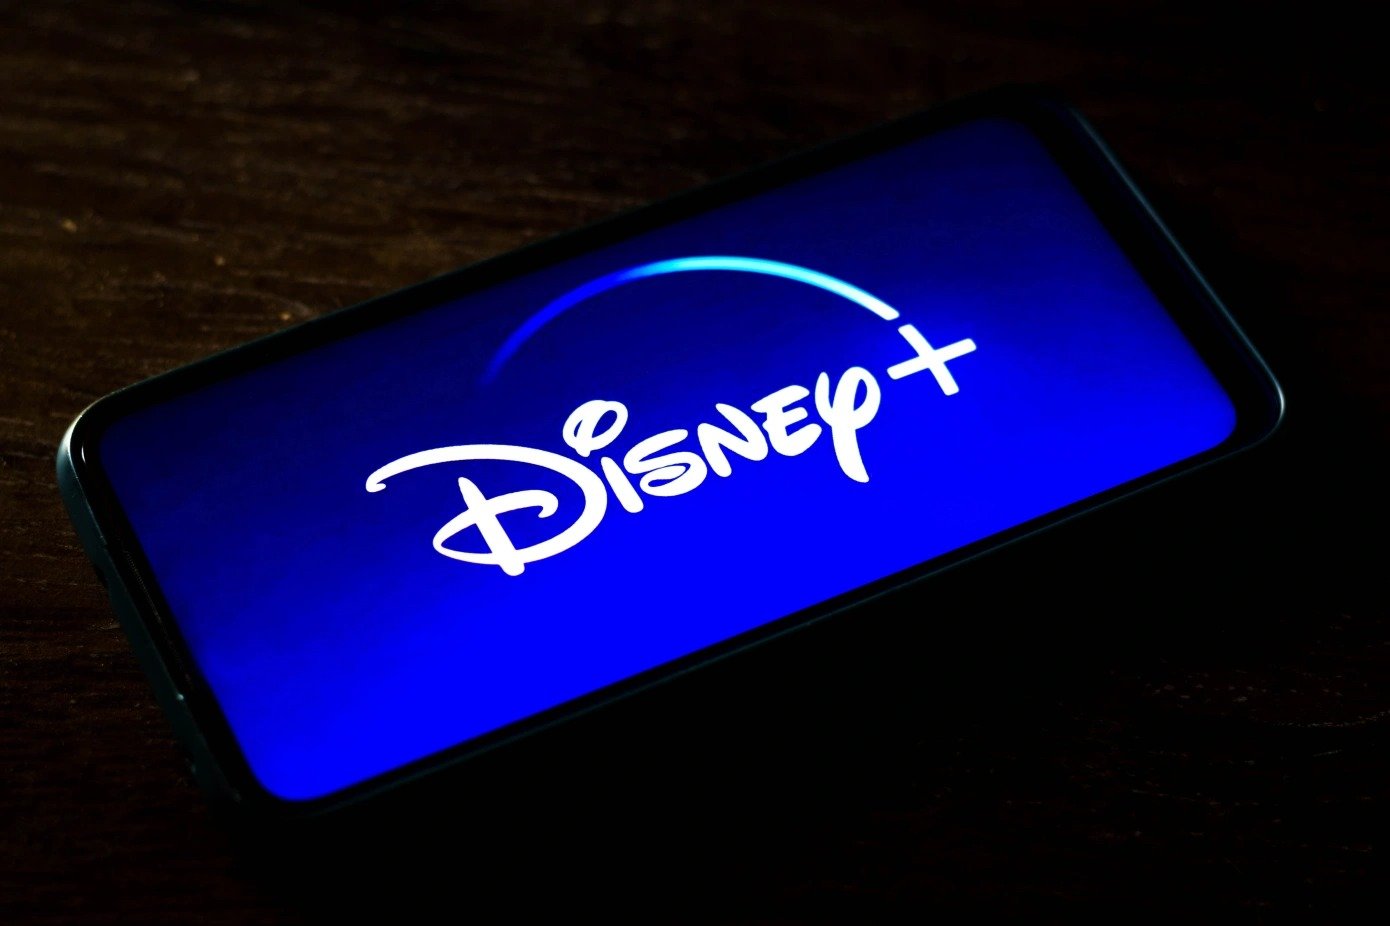 Το Disney+ ανακοινώνει για πρώτη φορά την απώλεια 2,4 εκατ. συνδρομητών ενώ σχεδιάζει την απόλυση 7 χιλιάδων εργαζομένων